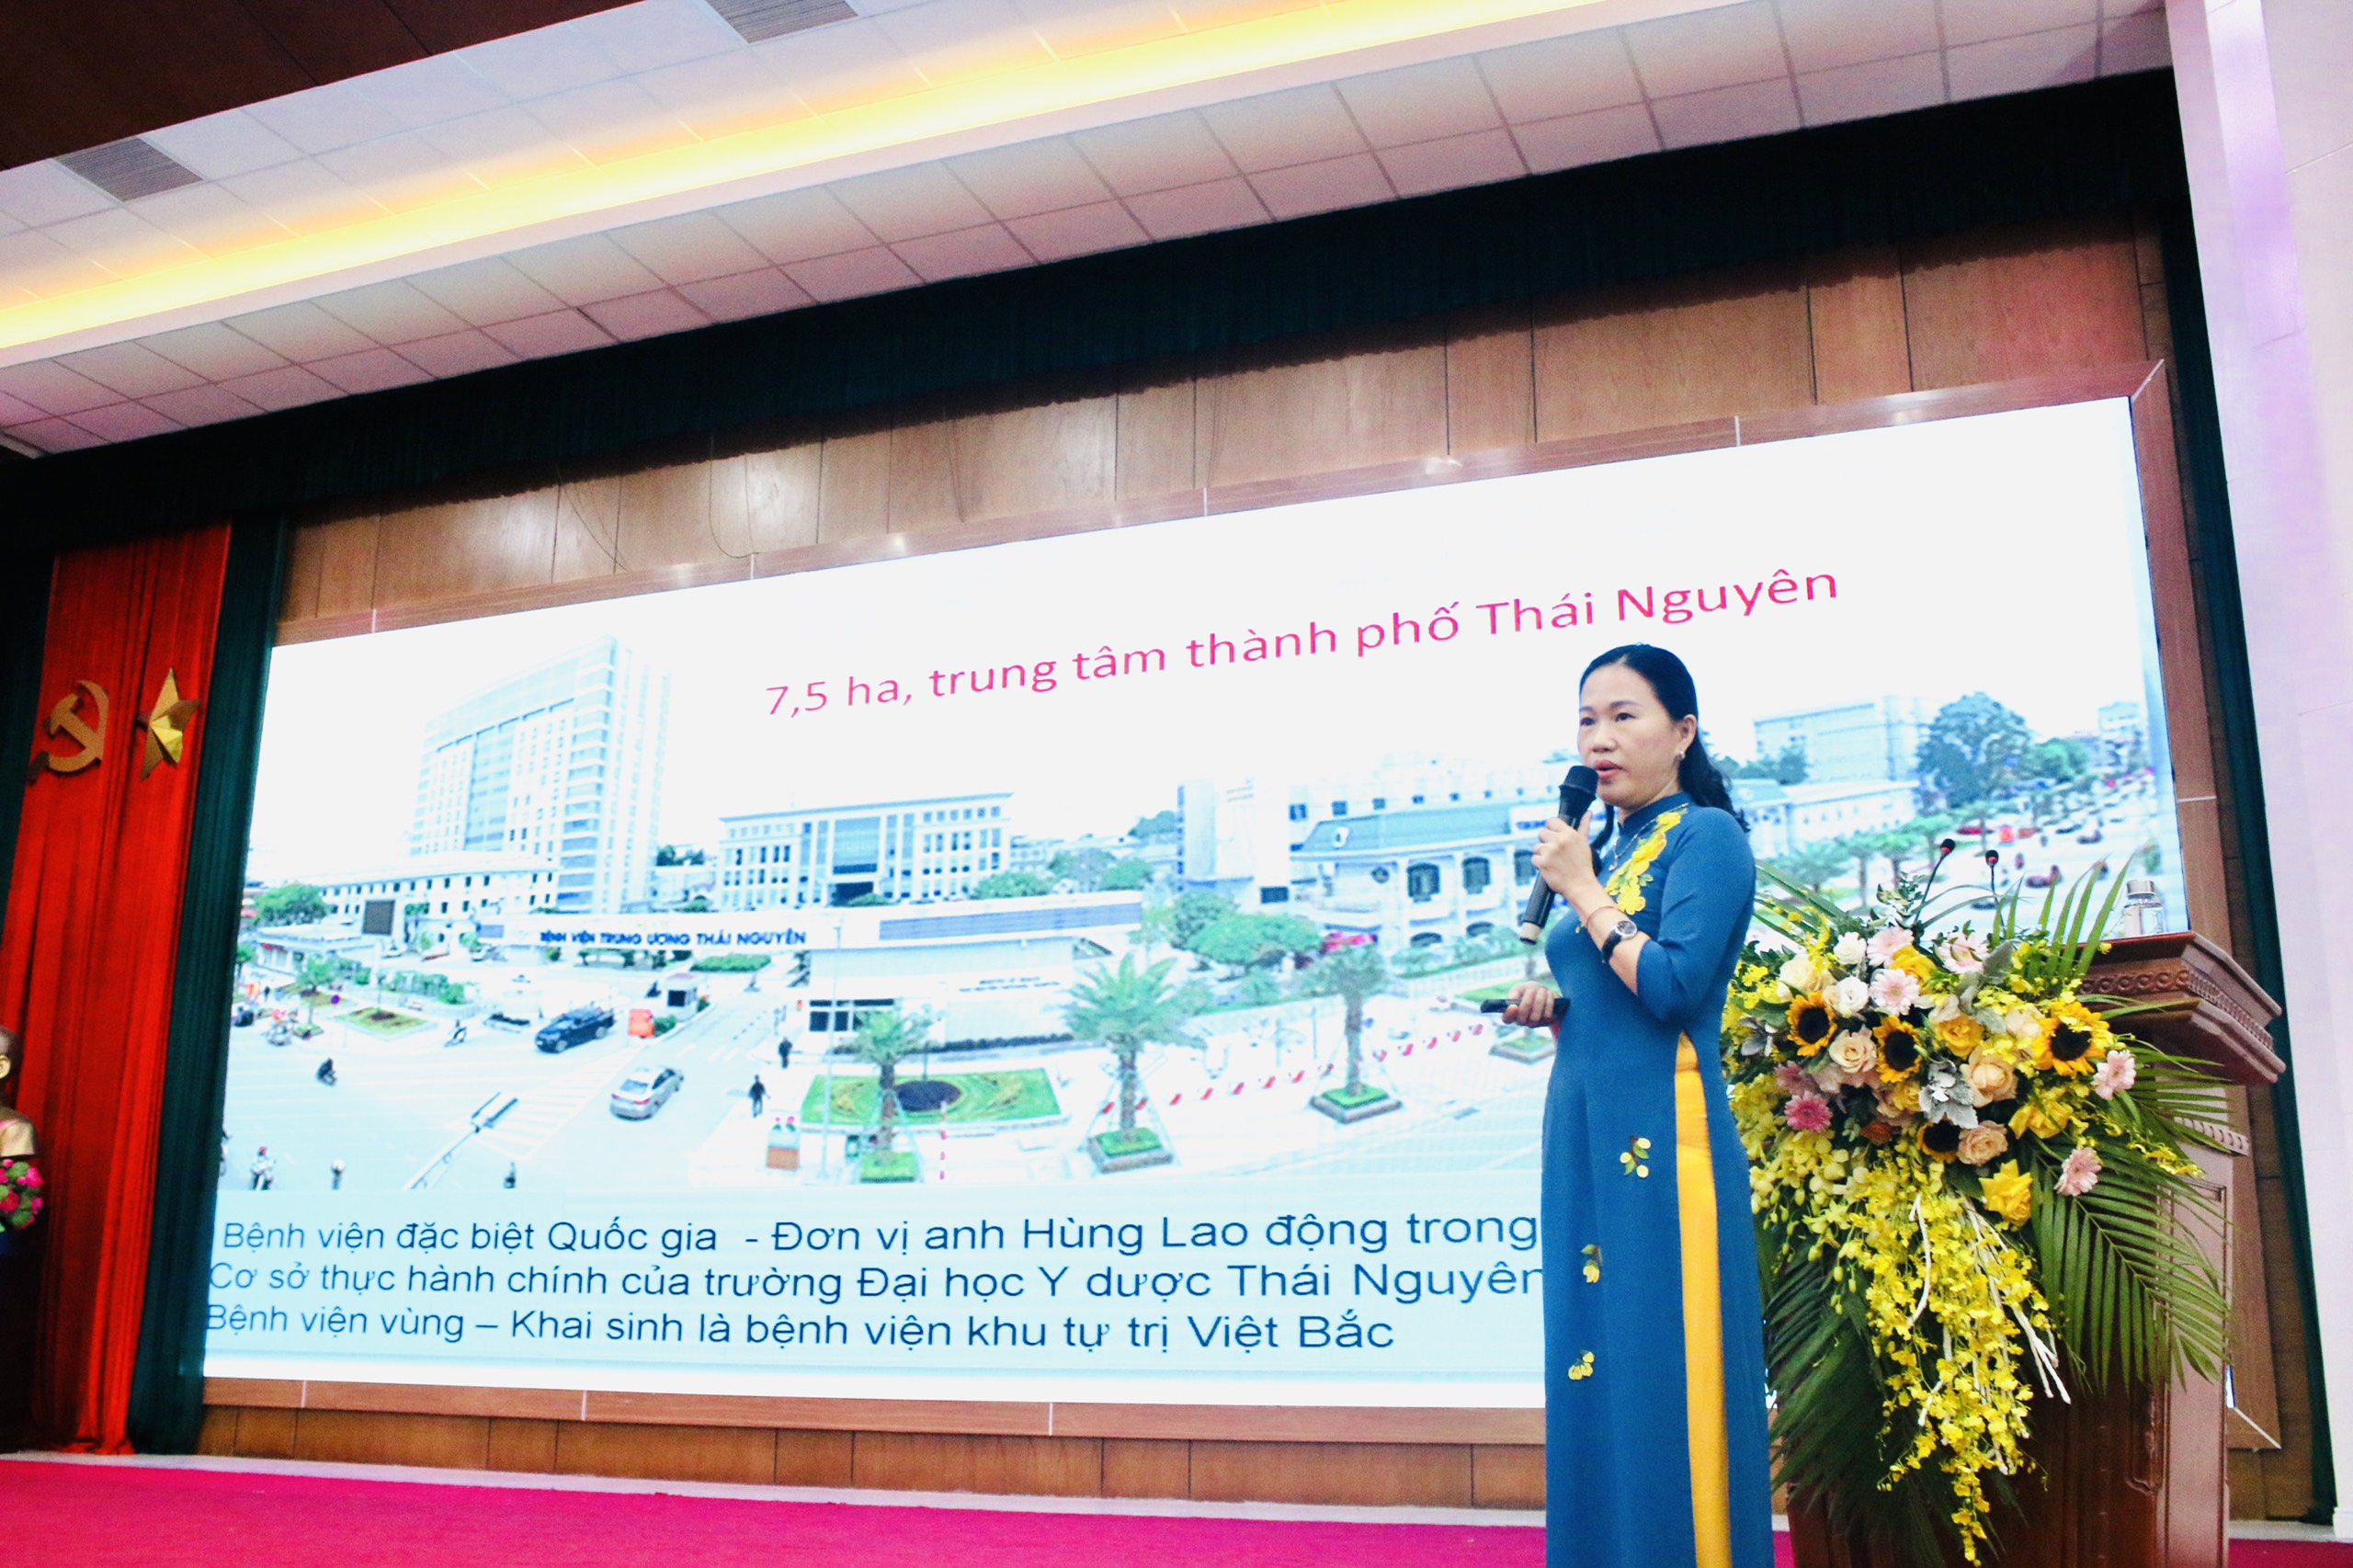 Hội nghị điều dưỡng Bệnh viện Trung ương Thái Nguyên:   30 NỘI DUNG, CHUYÊN ĐỀ SÂU ĐƯỢC BÁO CÁO